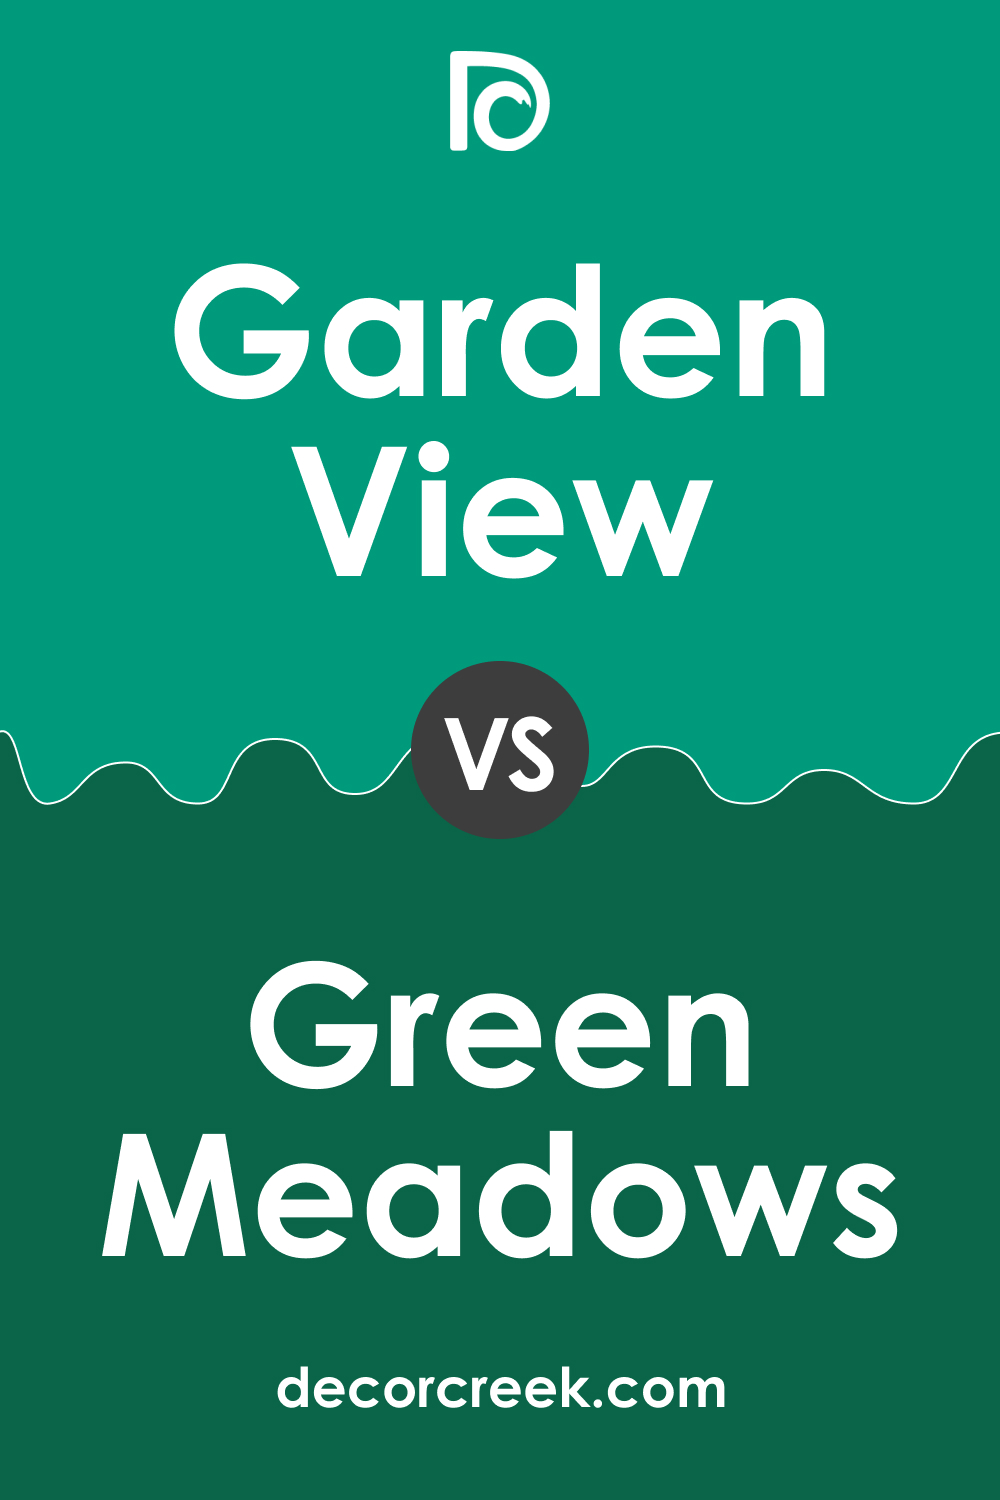 Garden View 616 vs. BM 2040-20 Green Meadows